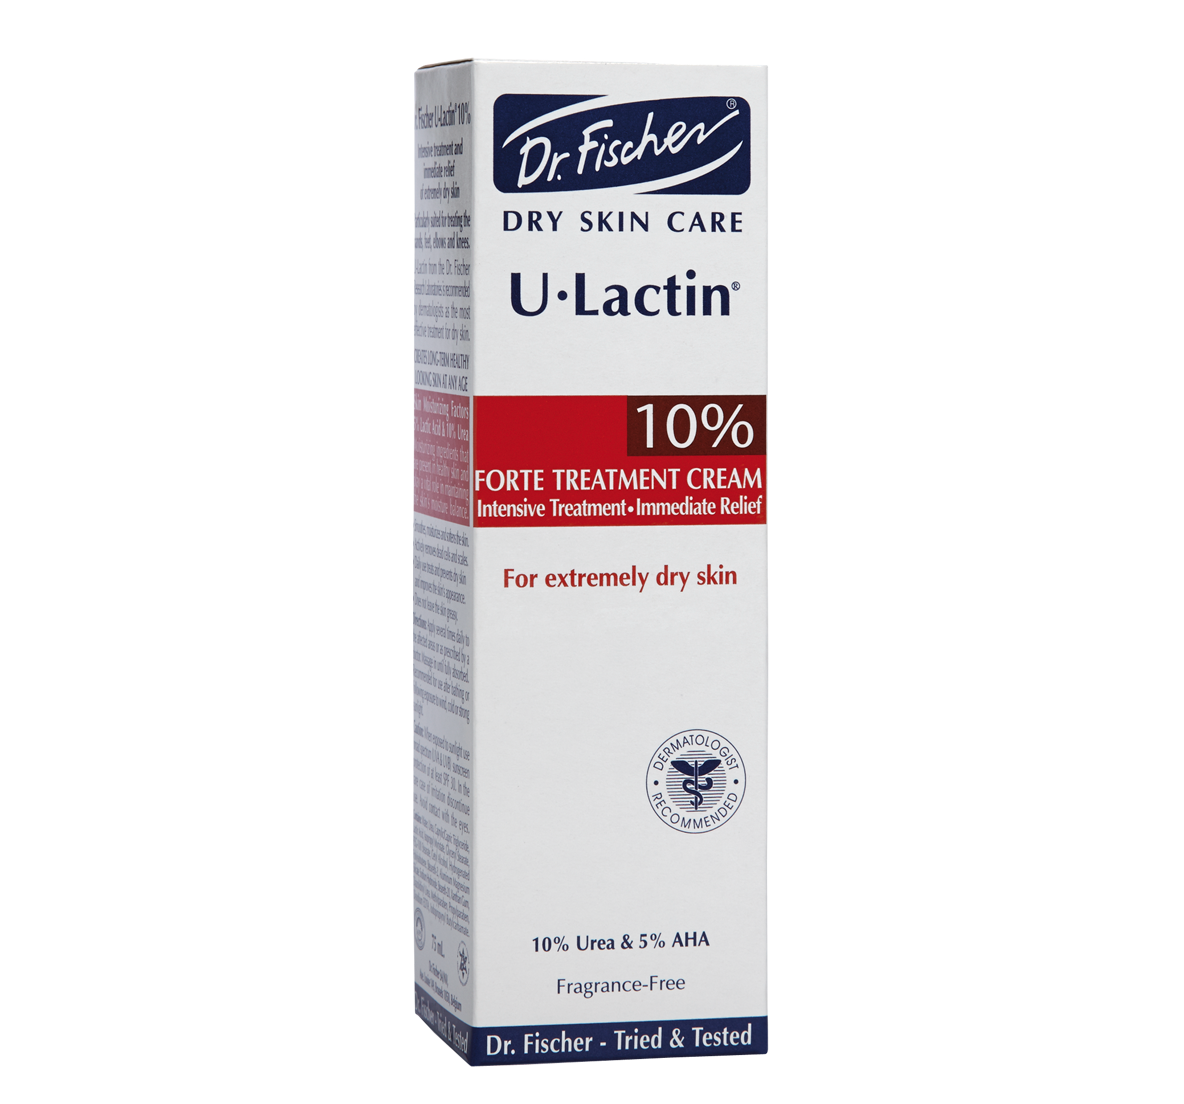 E_u-lactin_10%_1184x1104